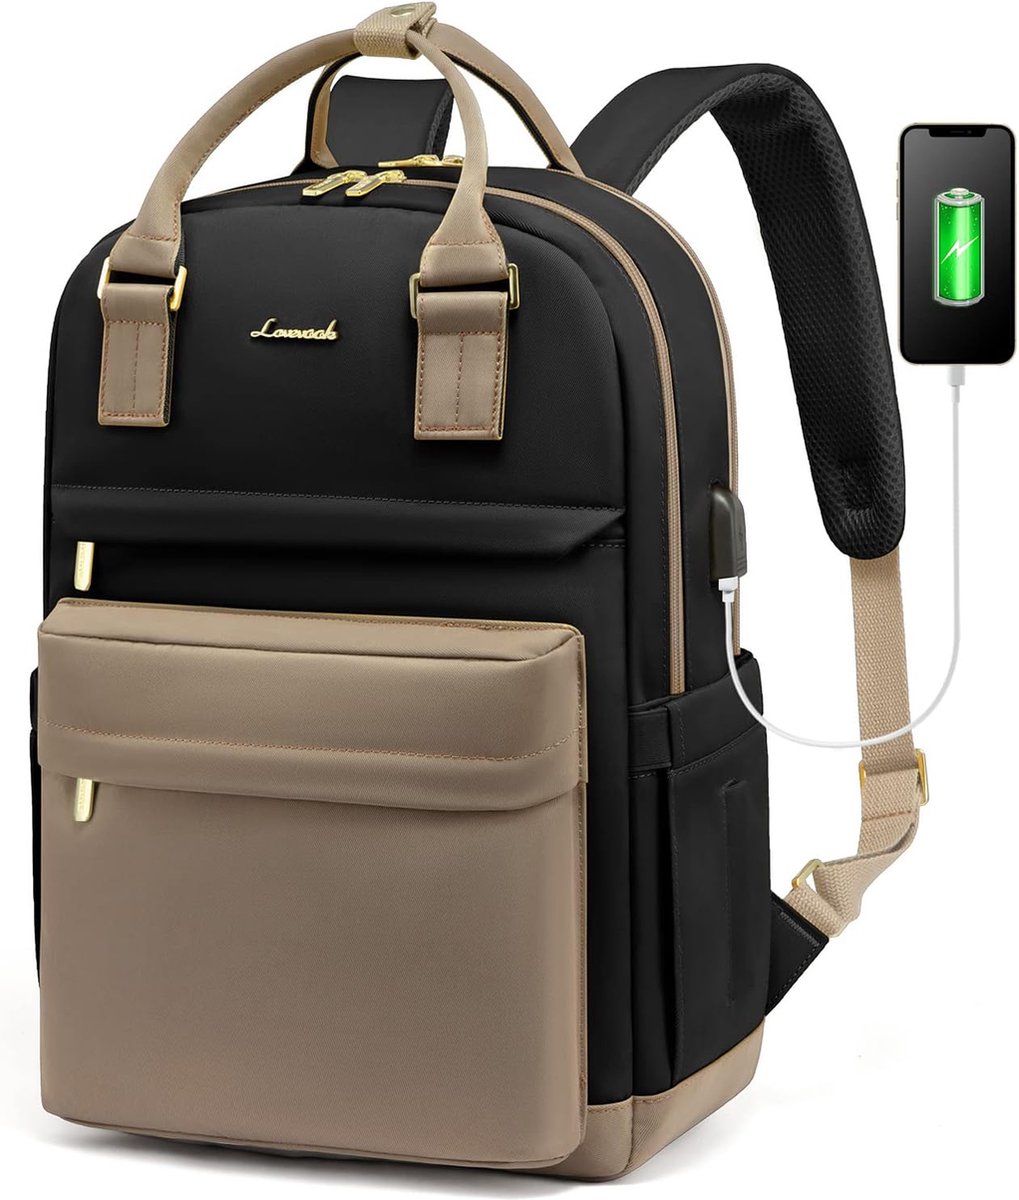 Laptop rugzak 15.6 inch - Zwart/bruin - USB-oplaadpoort - 43 x 29 x 18 - Rugzak met 4 vakken - Werk, school, kantoor - Waterbestendig